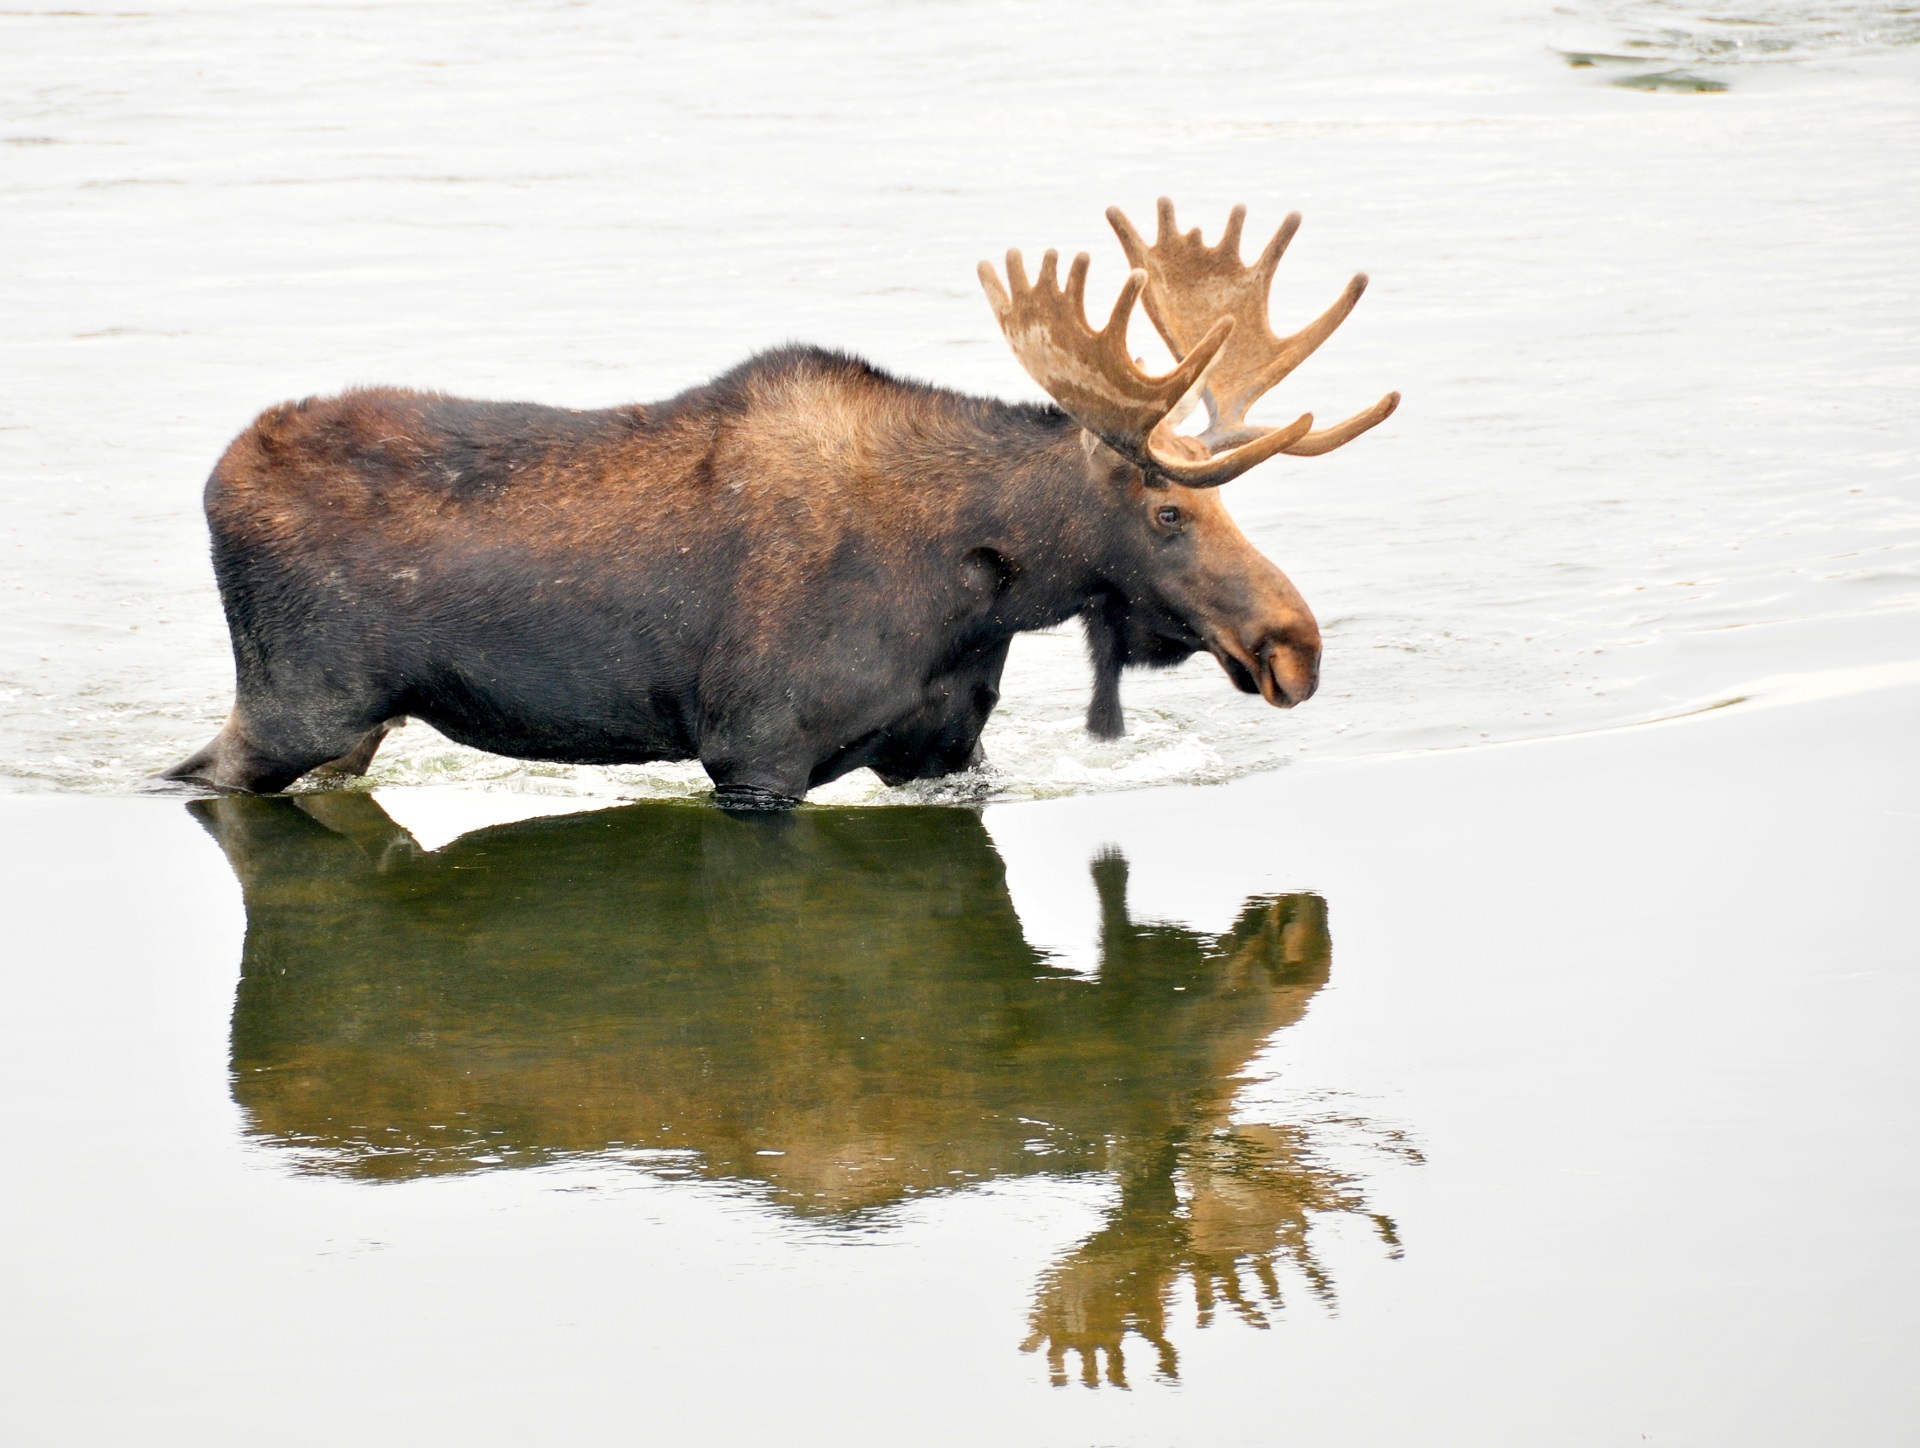 Bull moose in the river photo